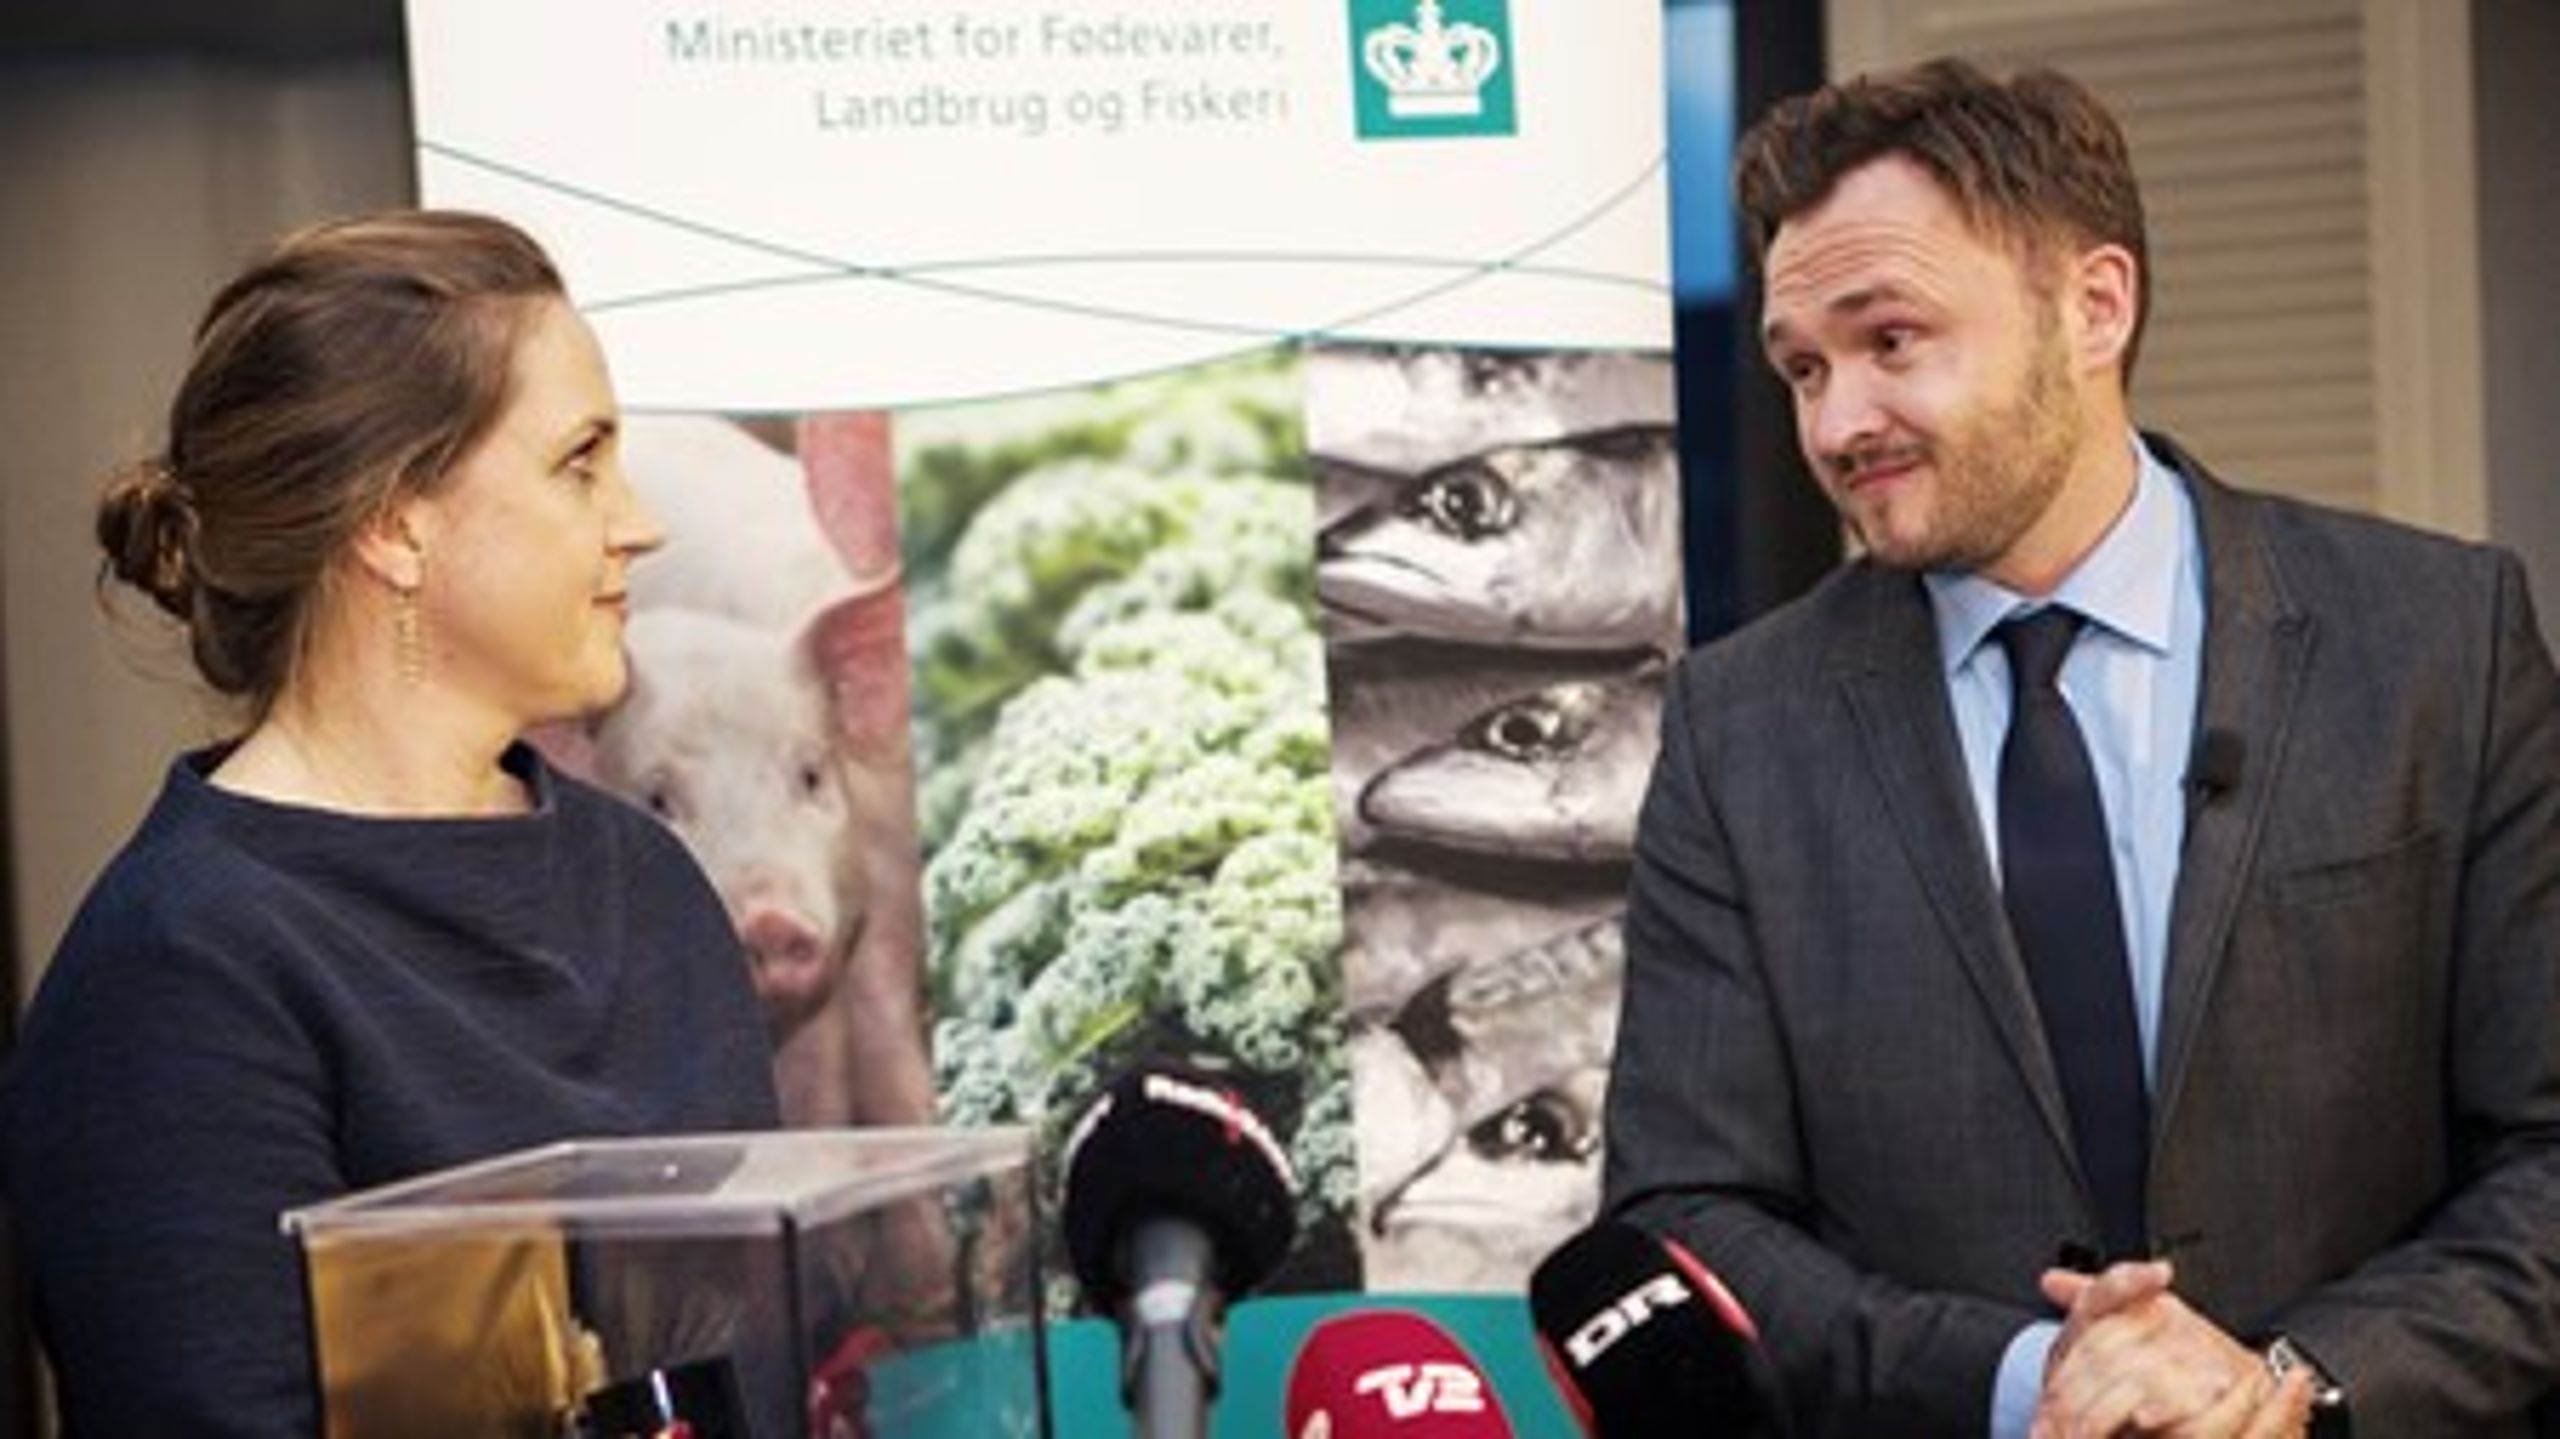 Med et politisk sekretariat har Dan Jørgensen forandret Fødevareministeriet.